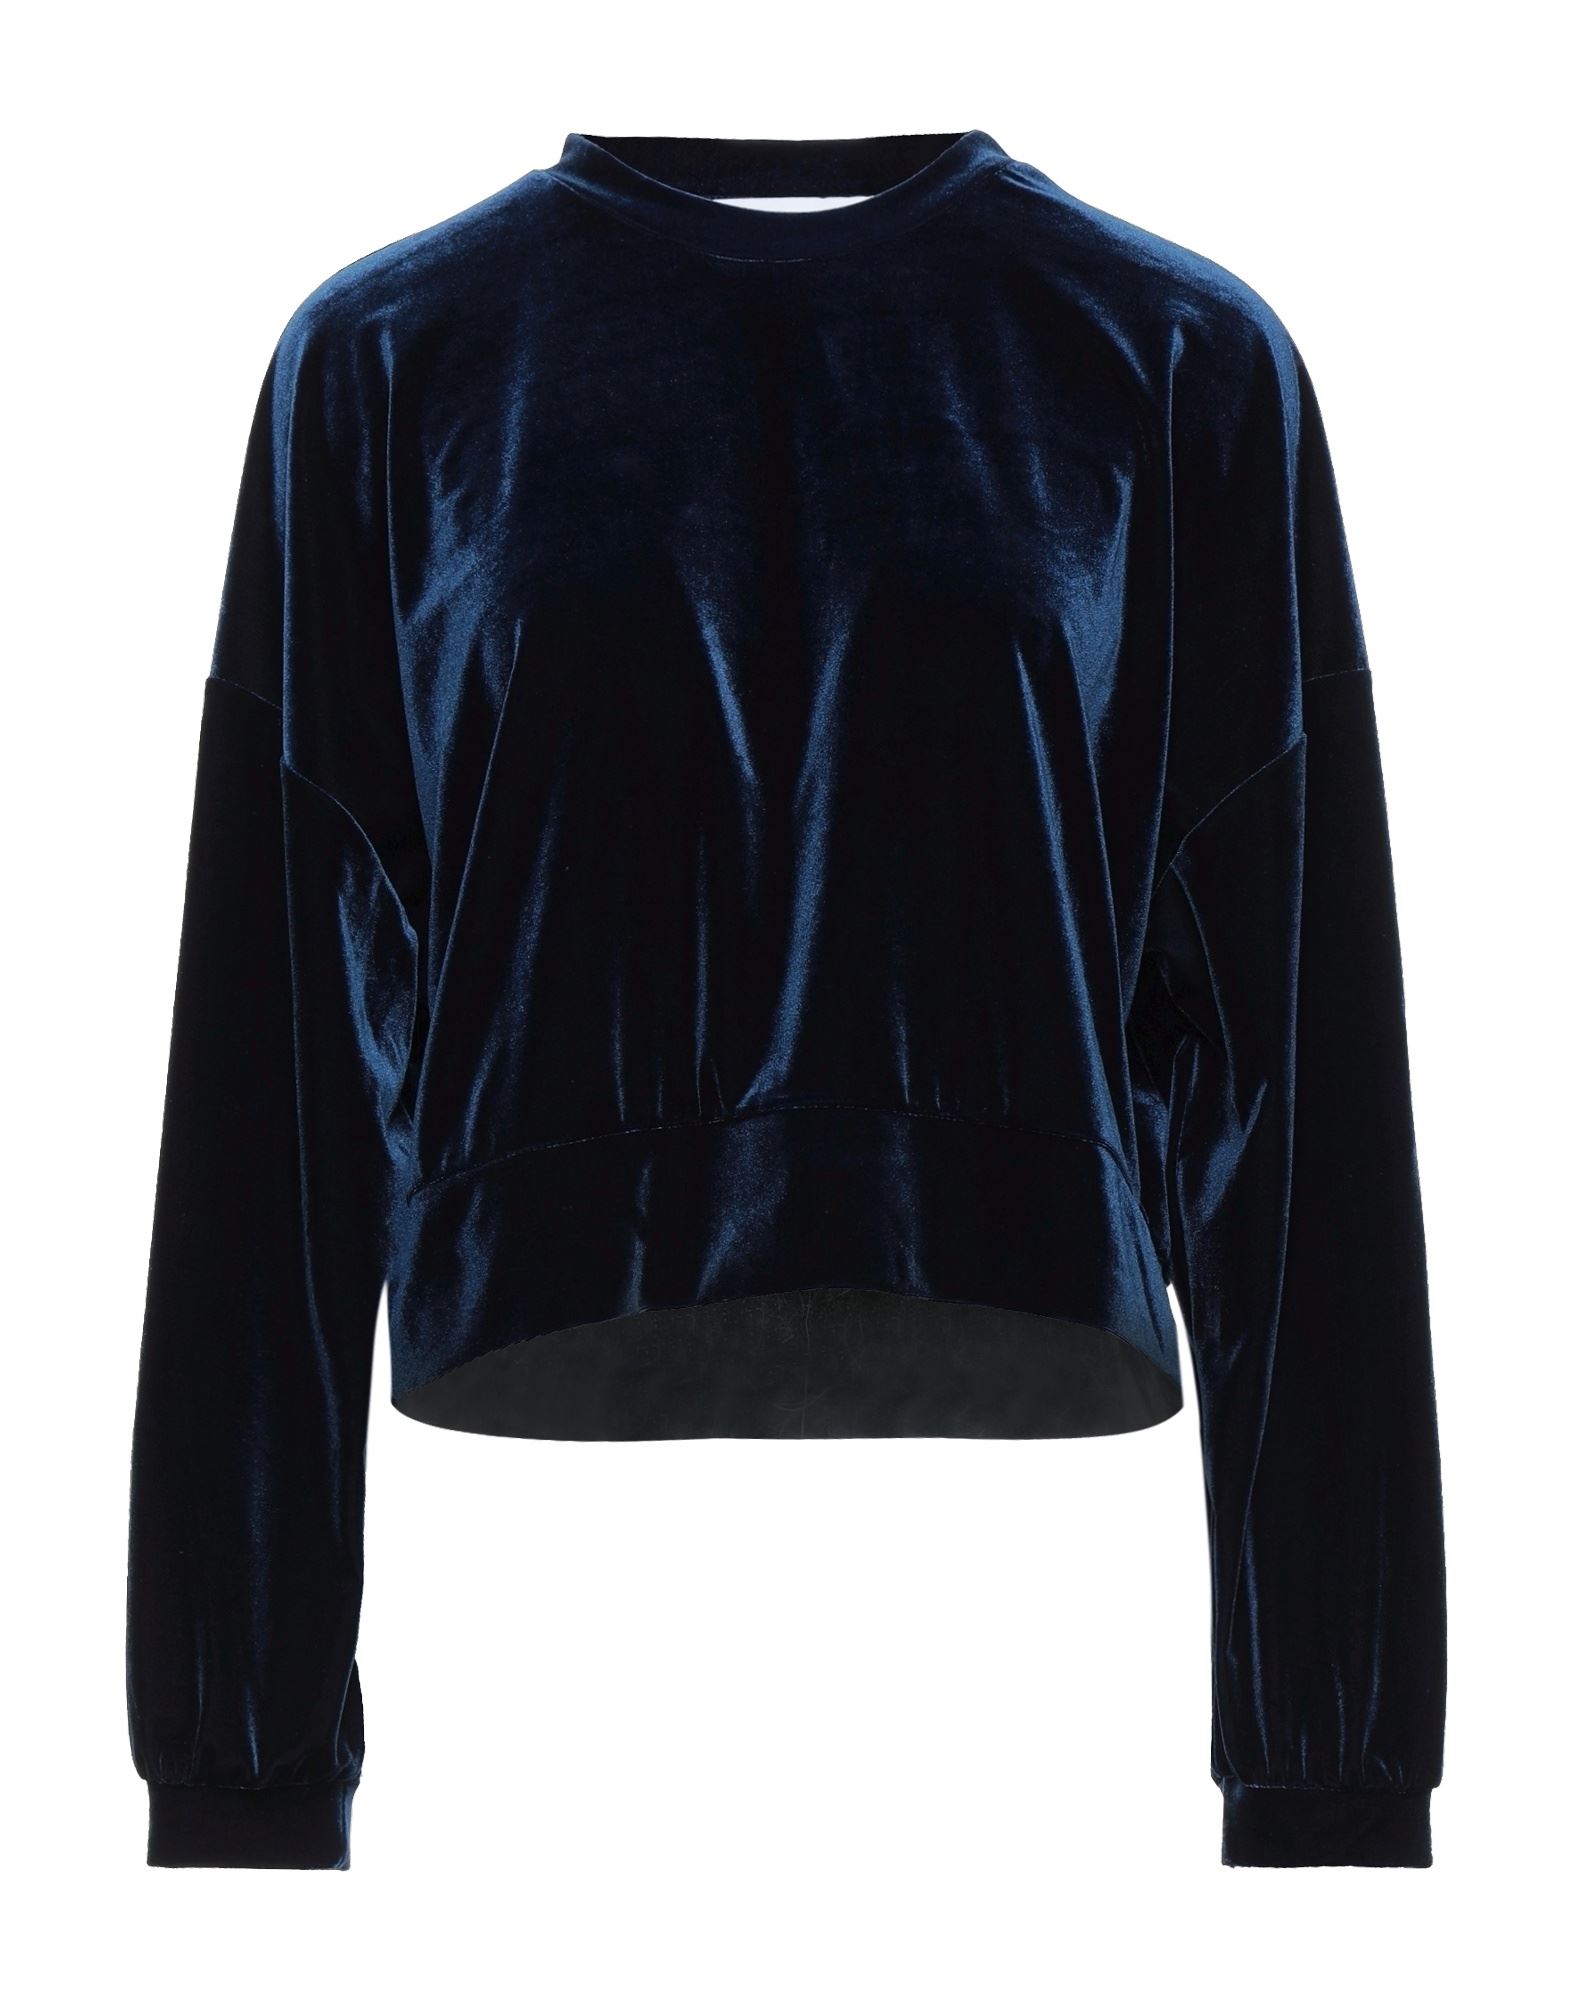 Alessandra Gallo Sweatshirts In Dark Blue